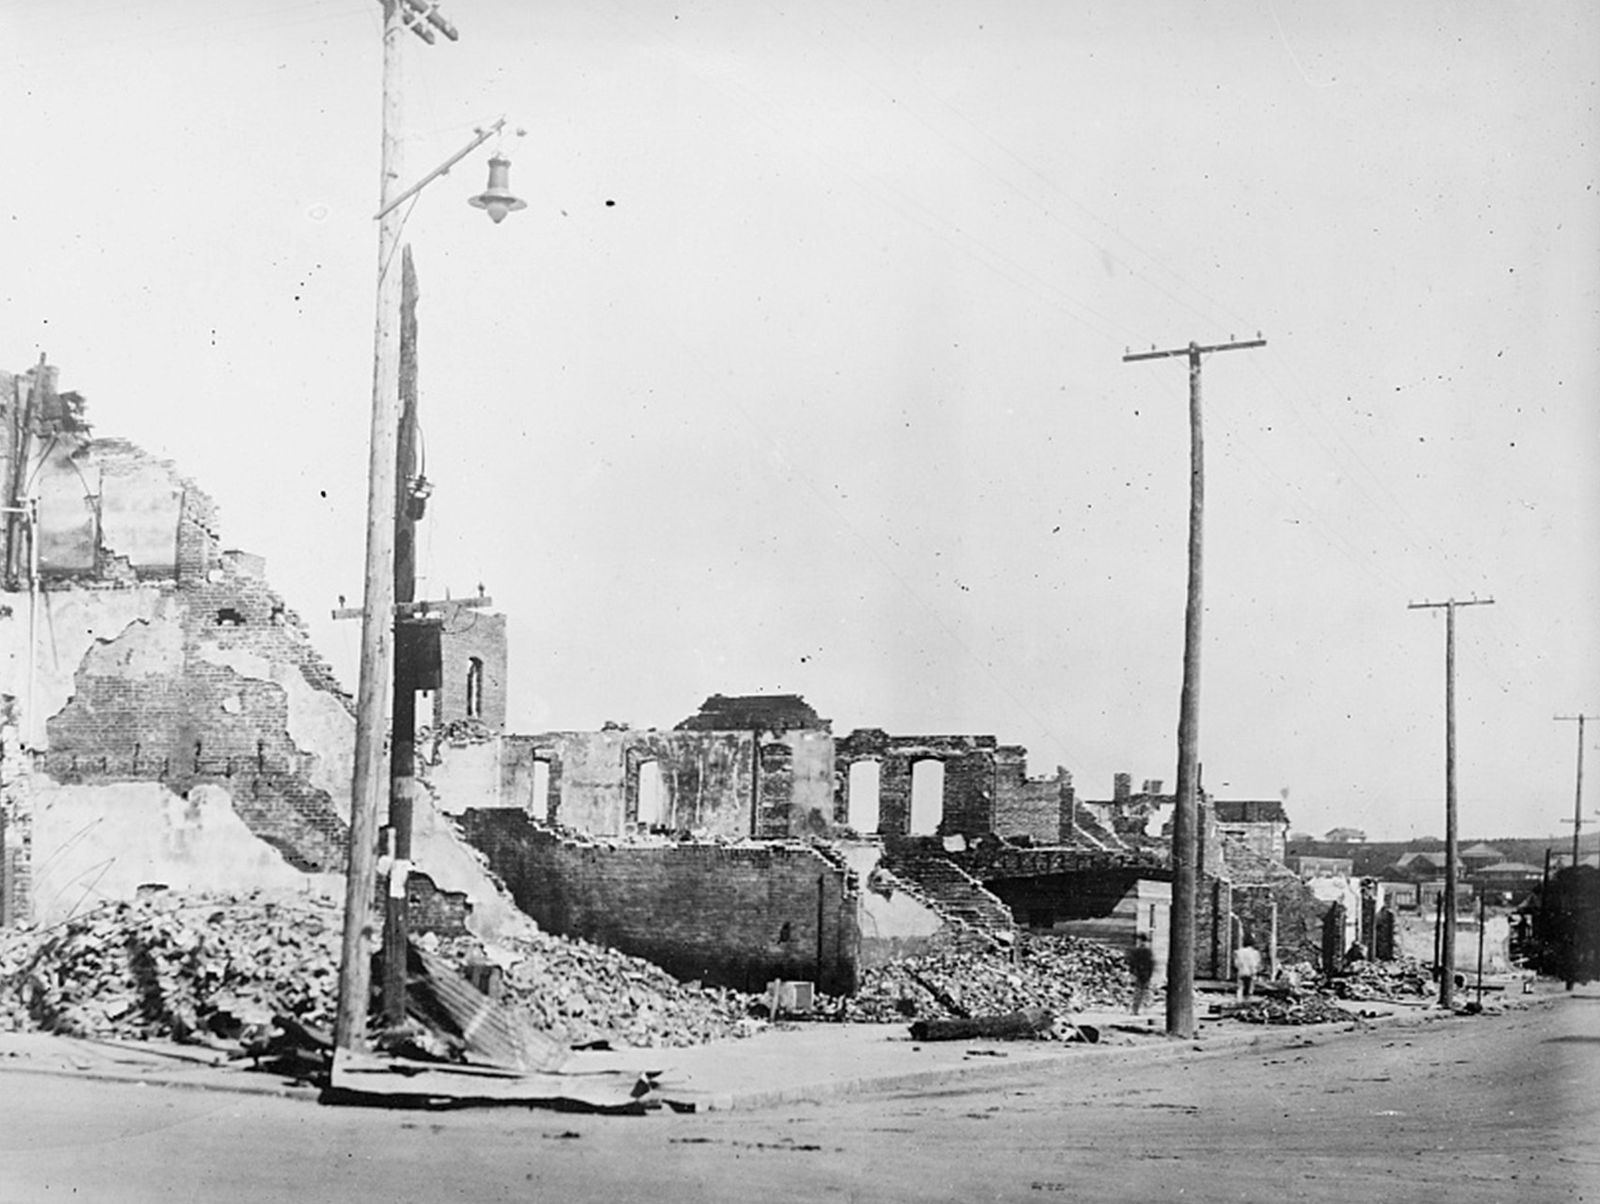 جانب من الدمار الذي لحق بمدينة تولسا بسبب أعمال العنف عام 1921 - via REUTERS